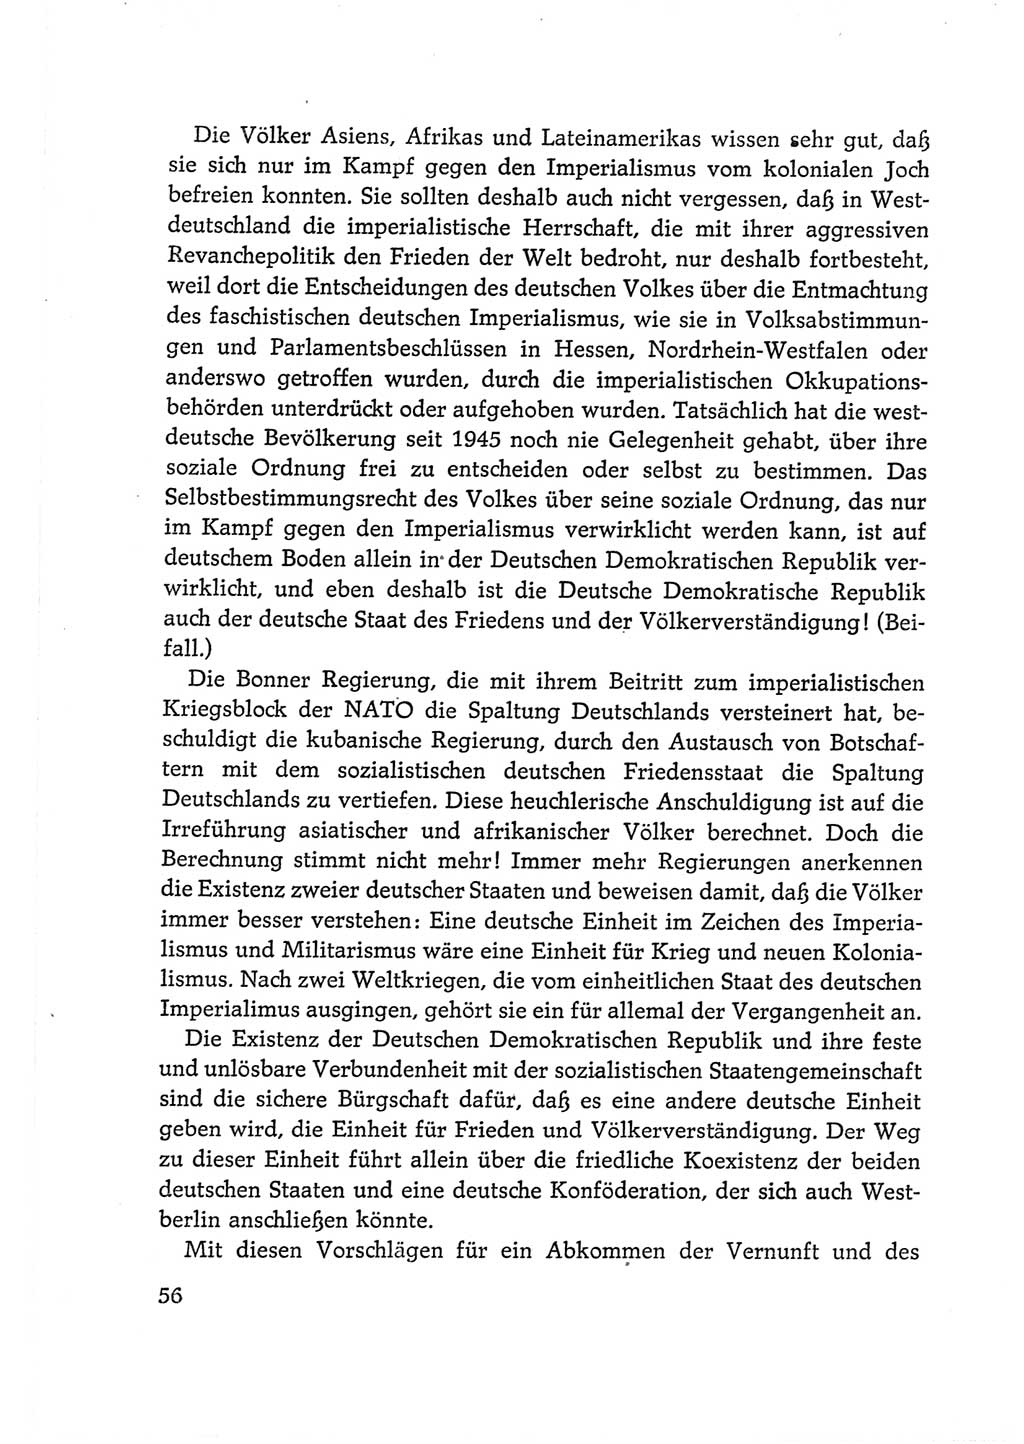 Protokoll der Verhandlungen des Ⅵ. Parteitages der Sozialistischen Einheitspartei Deutschlands (SED) [Deutsche Demokratische Republik (DDR)] 1963, Band Ⅱ, Seite 56 (Prot. Verh. Ⅵ. PT SED DDR 1963, Bd. Ⅱ, S. 56)